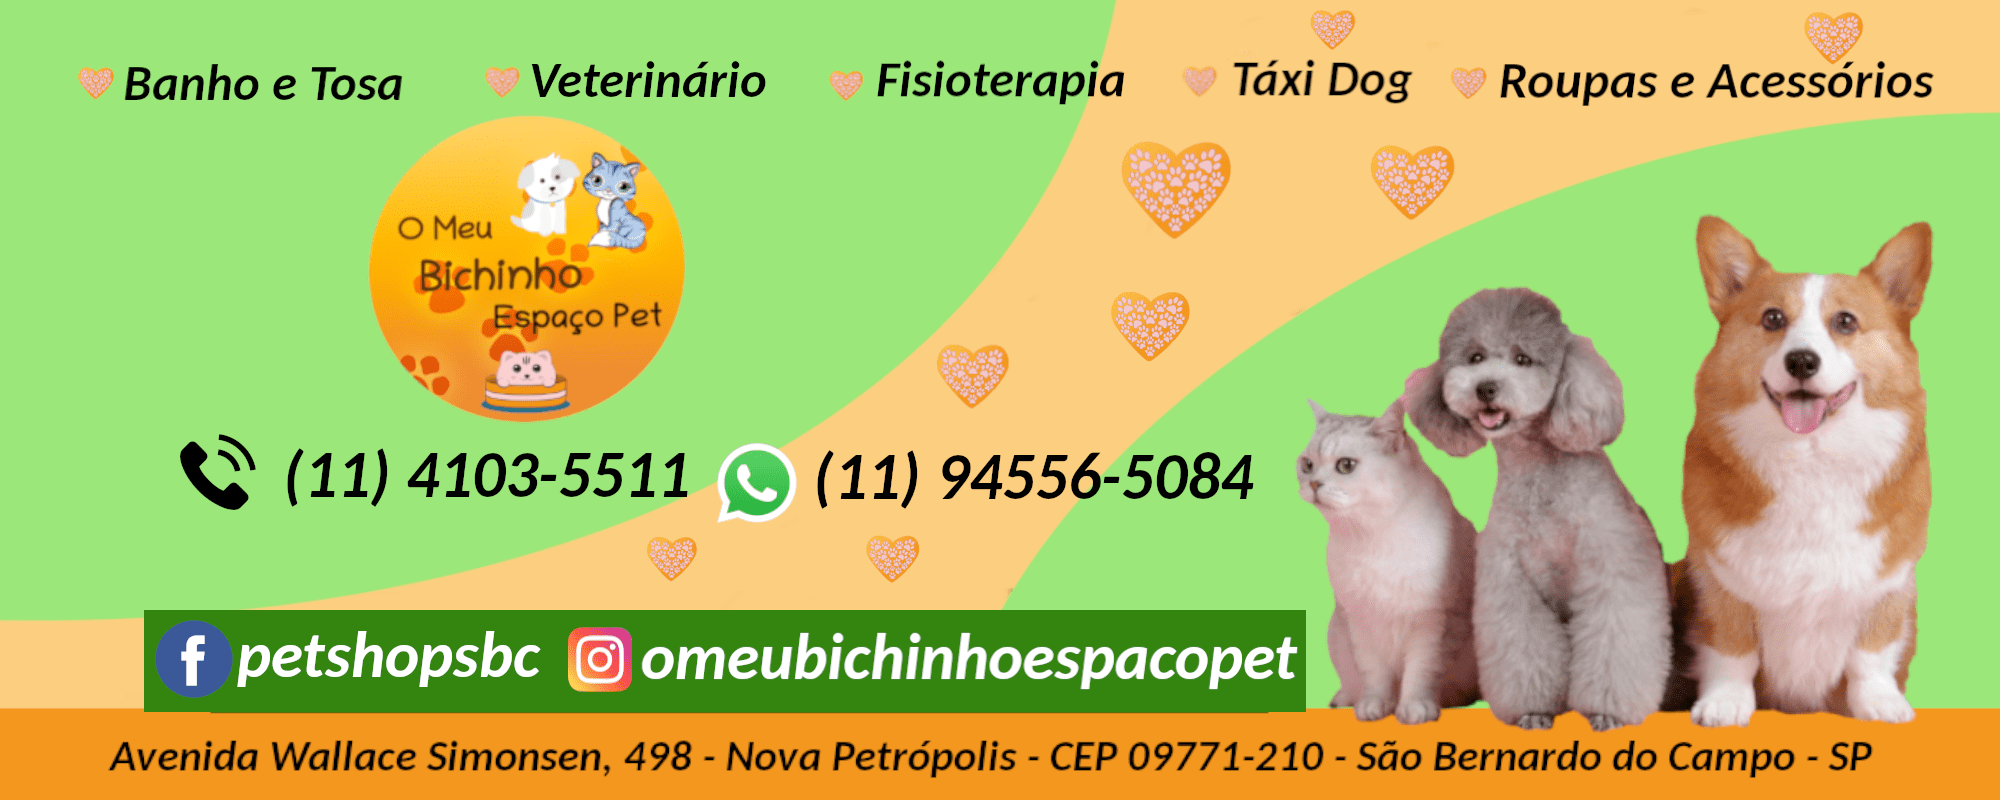 (c) Omeubichinhoespacopet.com.br